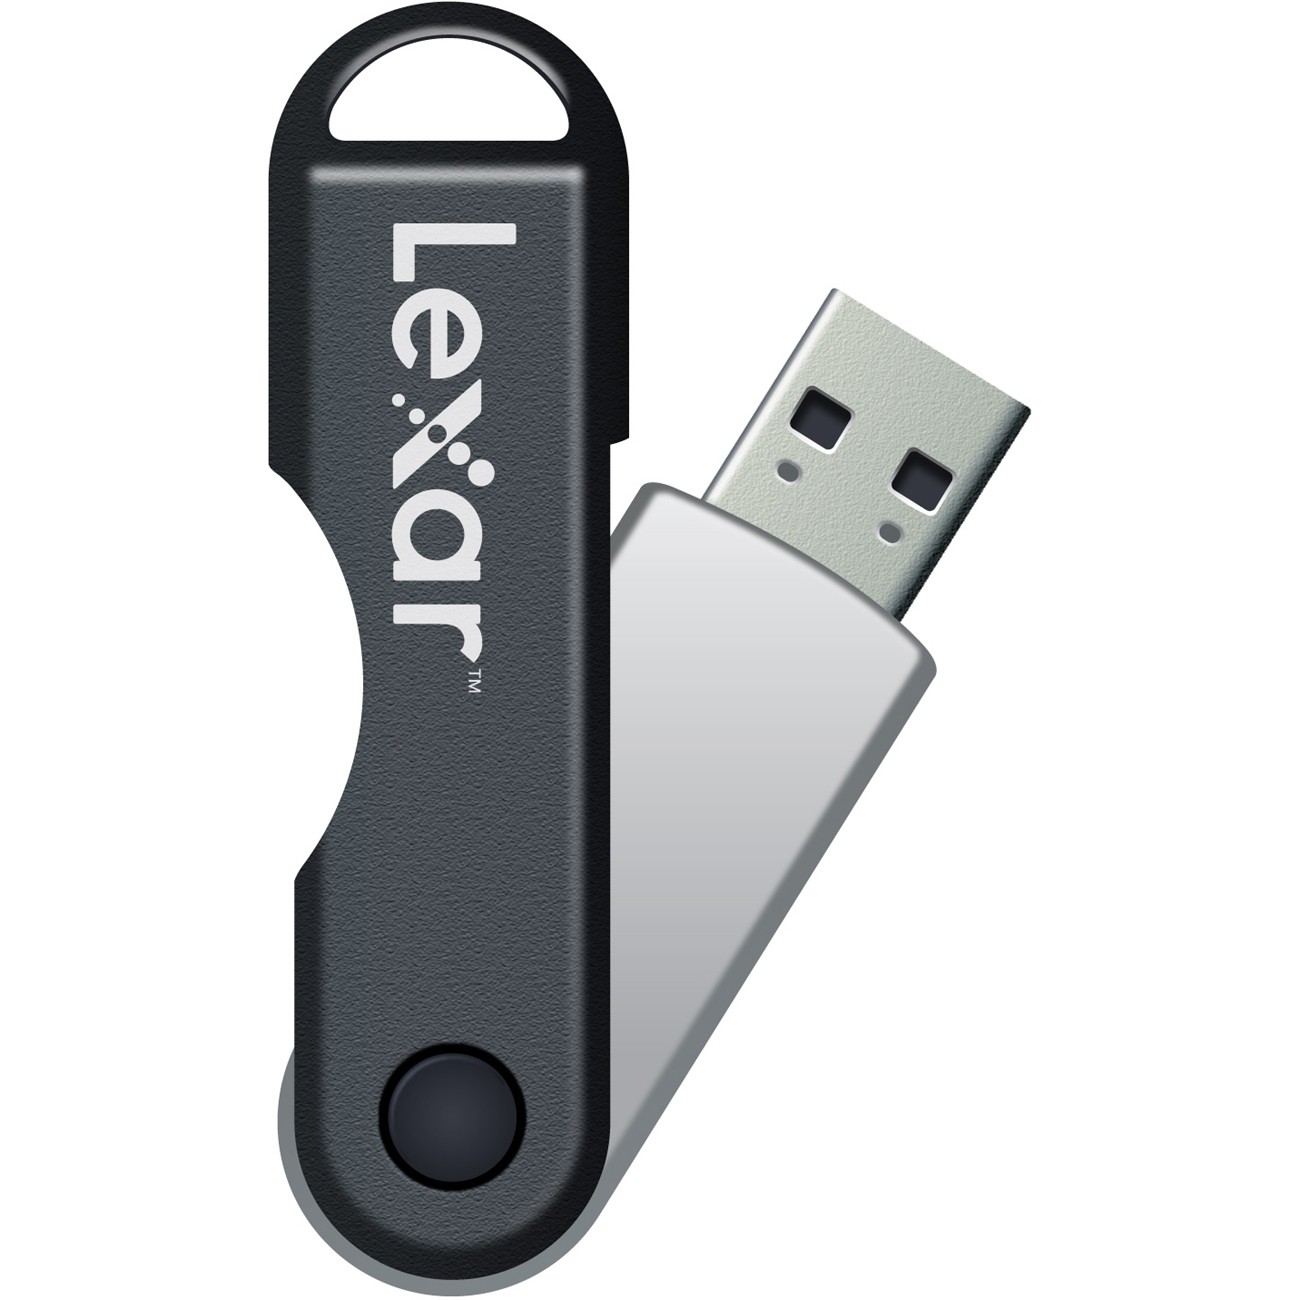 Best Buy: Lexar JumpDrive TwistTurn 16 GB USB 2.0 Flash Drive LJDTT16GASBNA